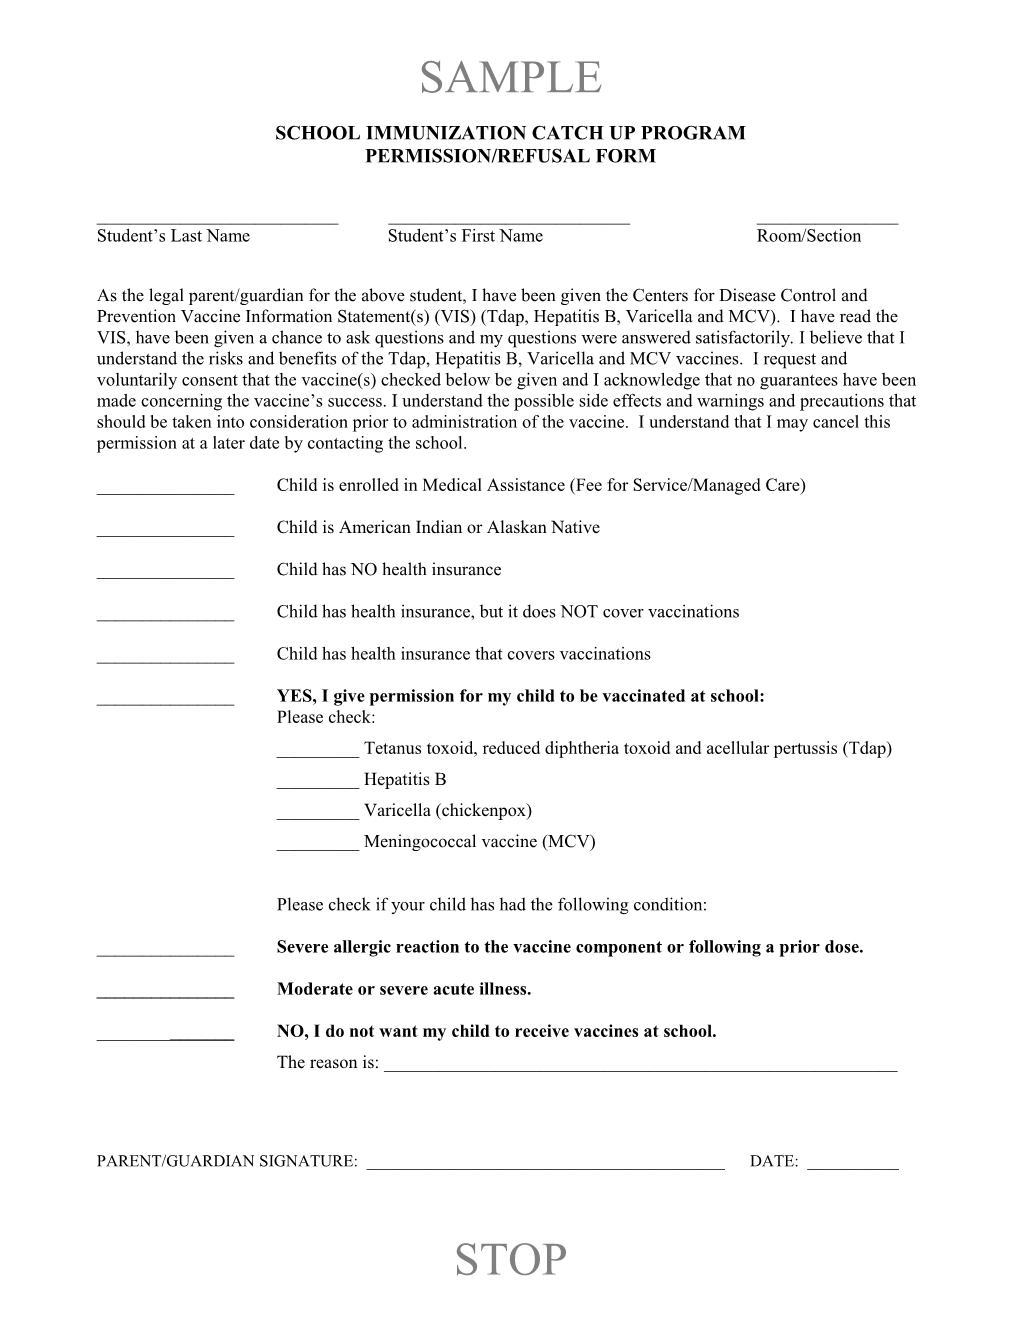 SICU Permission-Refusal Form 2013